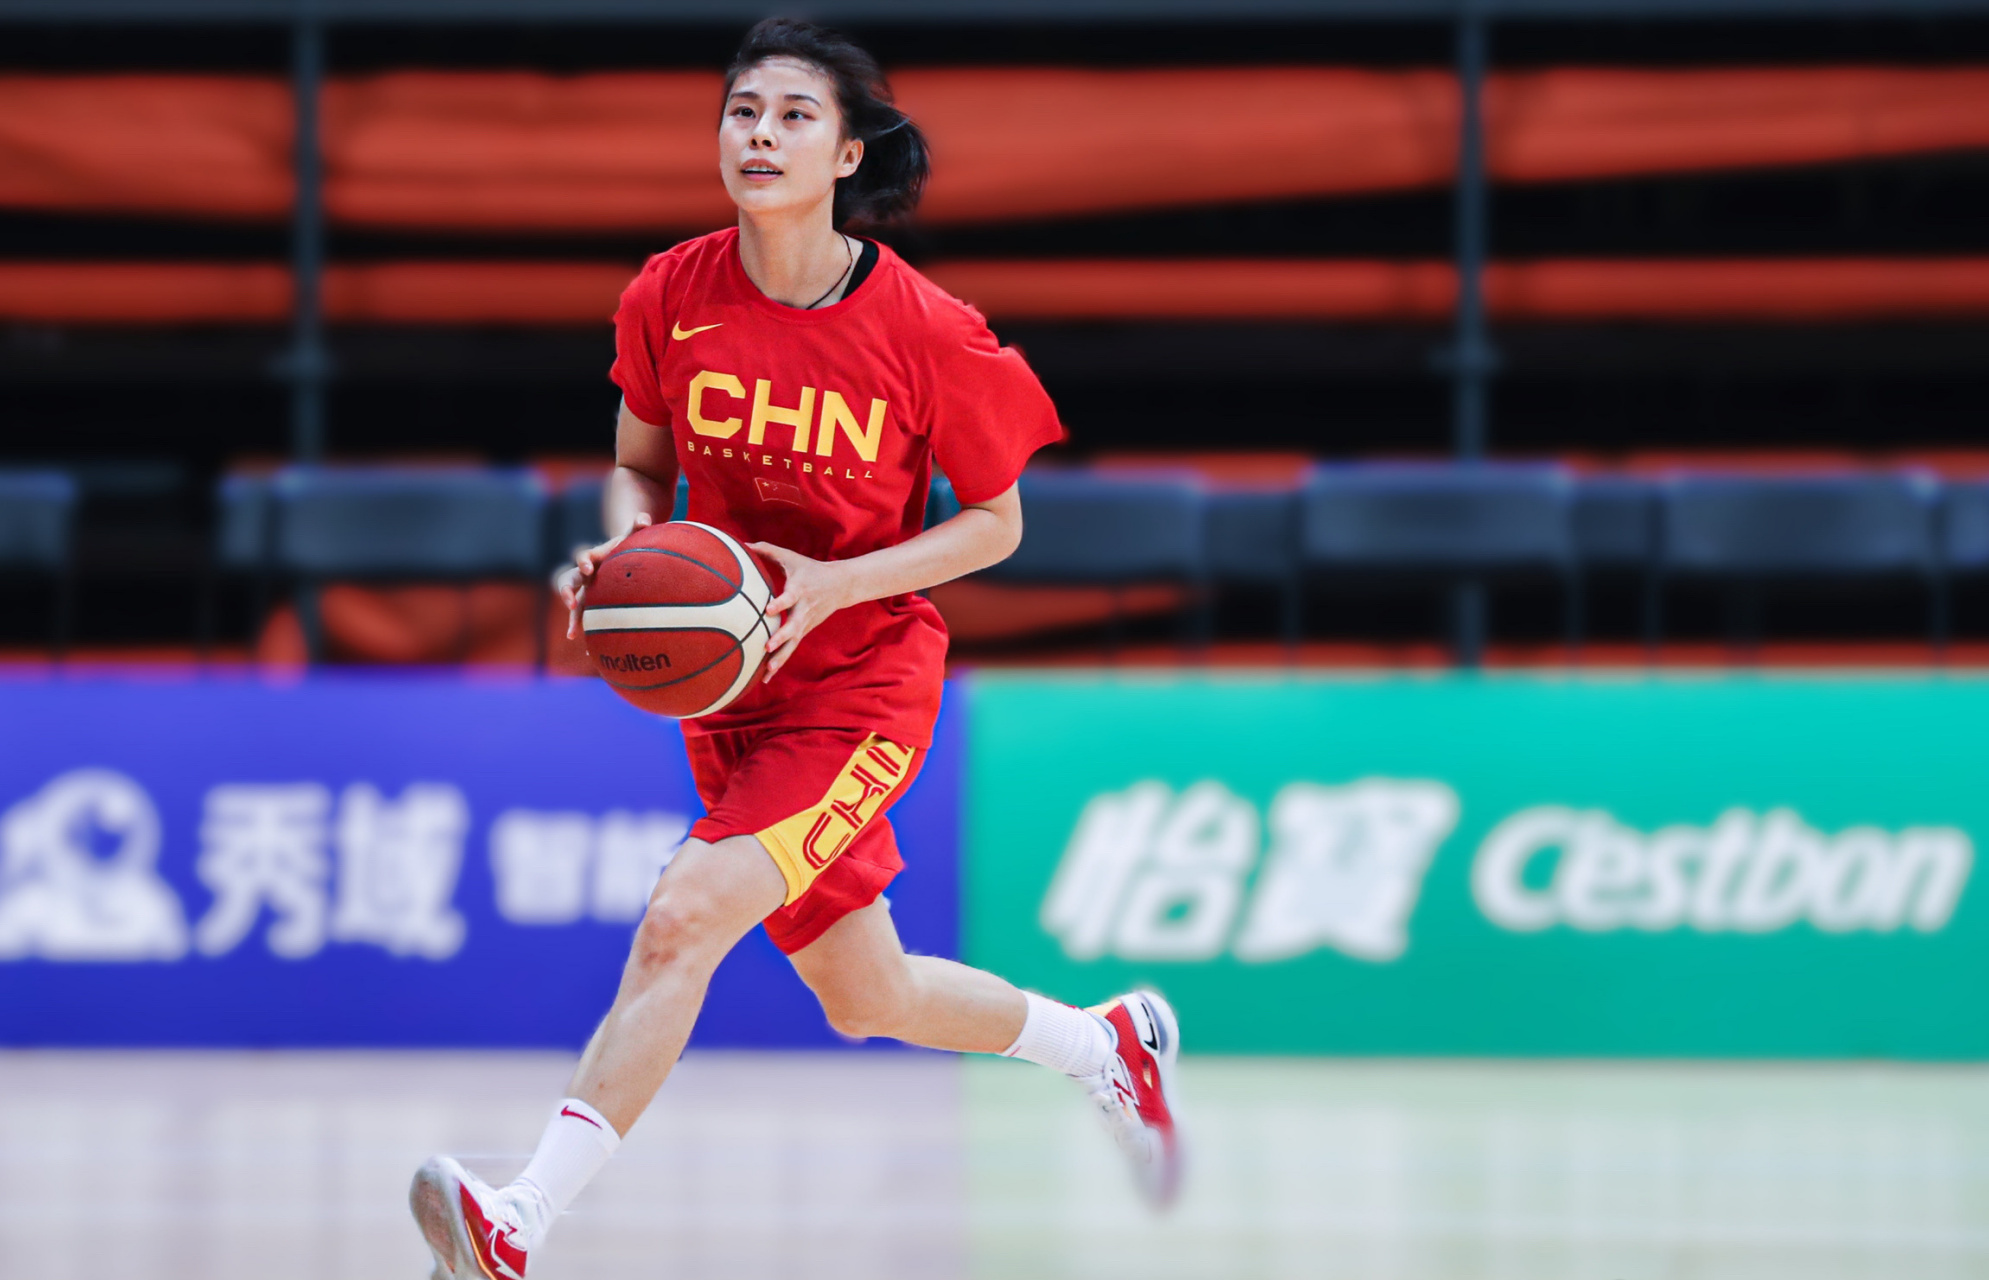 王思雨,作为女篮的佳丽球员,她拥有175cm的挺拔身材,60kg的匀称体重